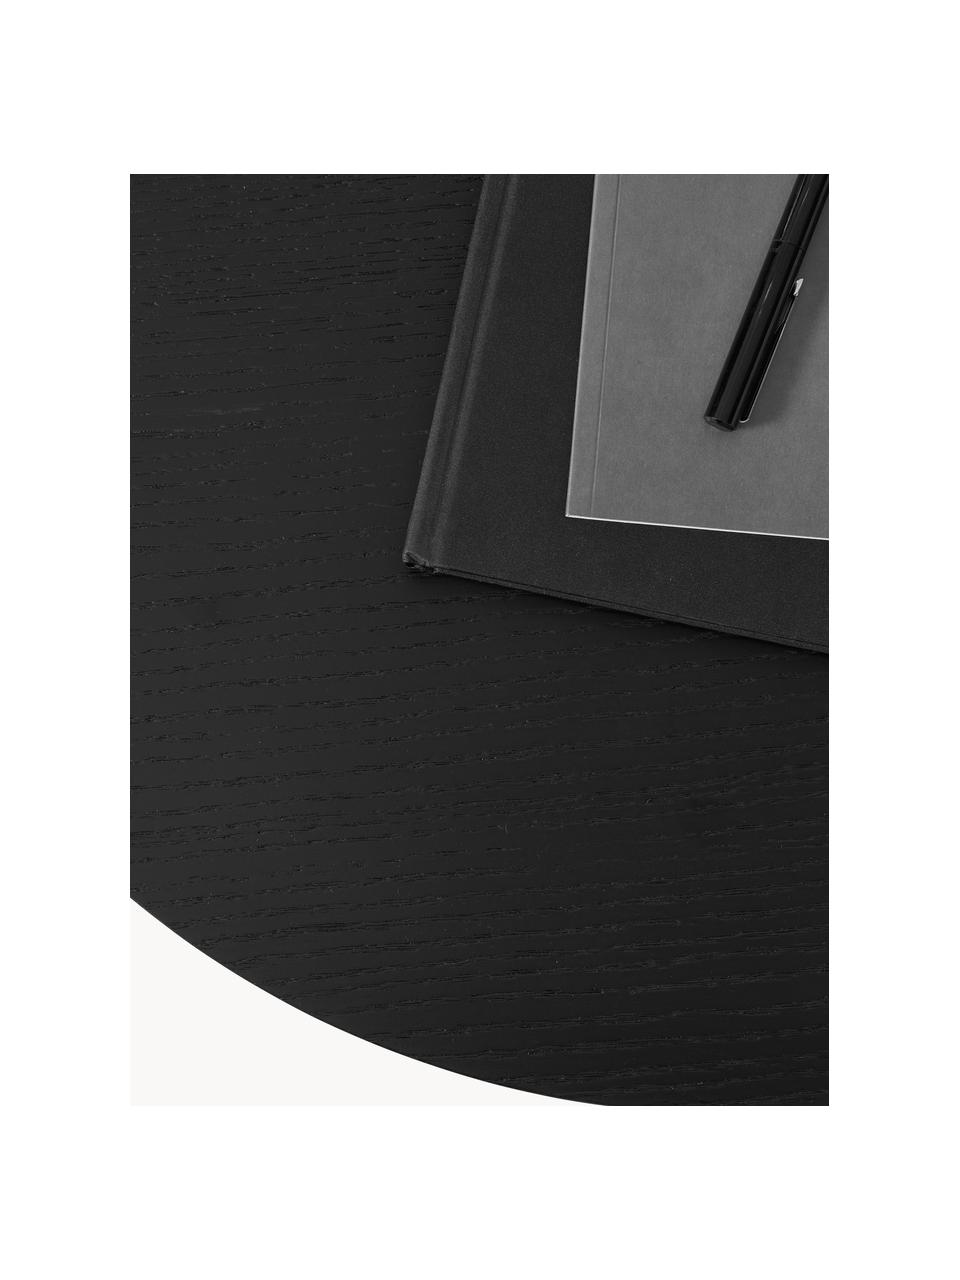 Ovaler Holz-Couchtisch Toni, Mitteldichte Holzfaserplatte (MDF) mit Eichenholzfurnier, lackiert, Schwarz, B 100 x T 55 cm